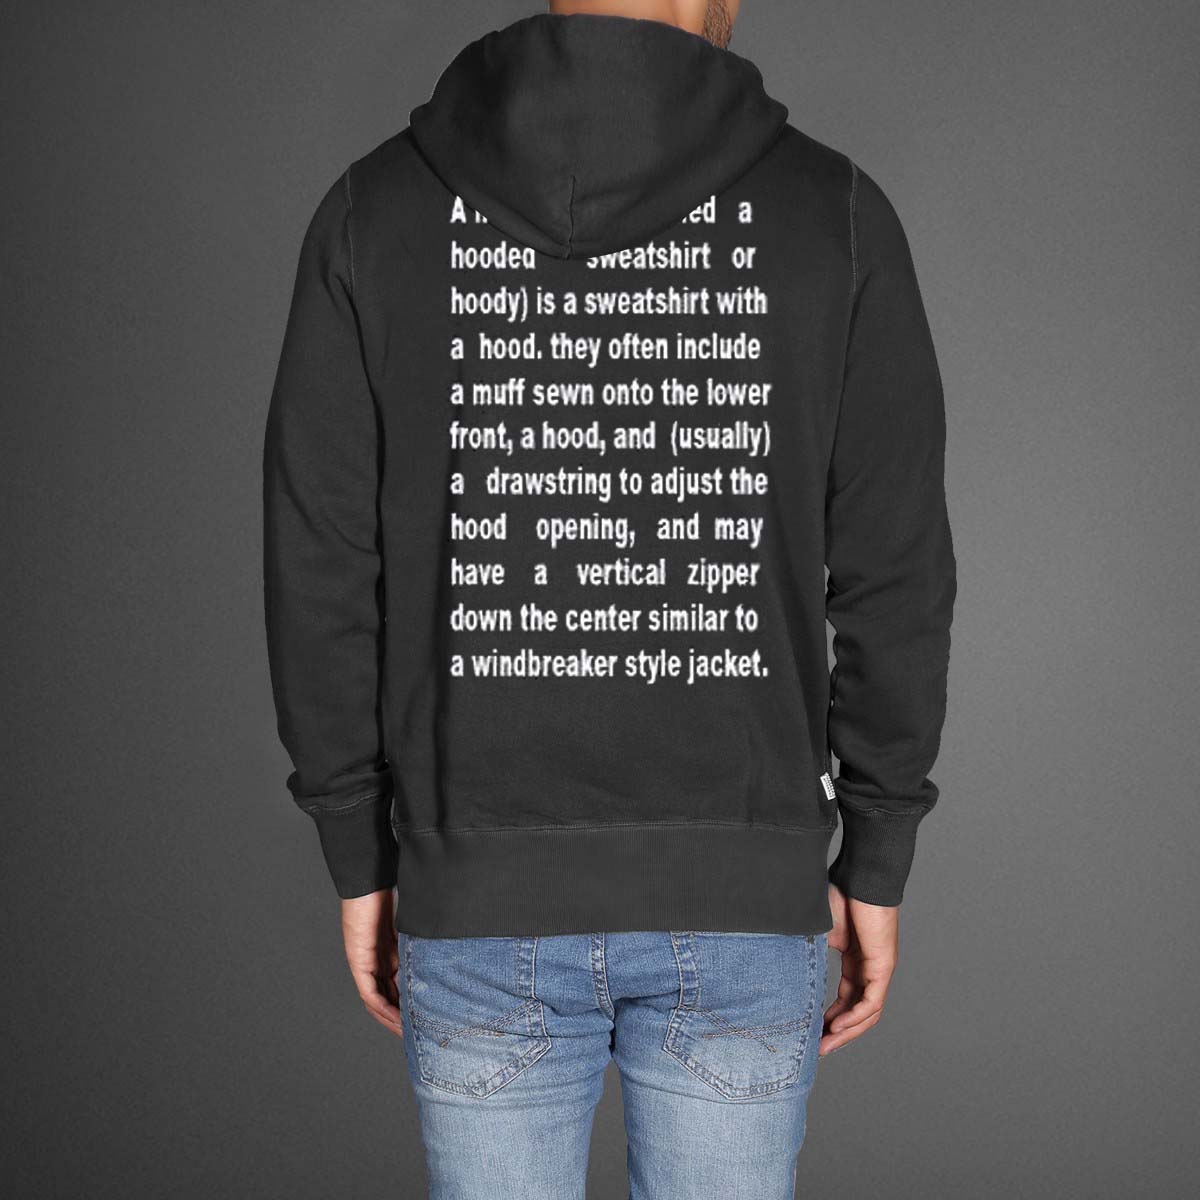 hoodie or sweatshirt